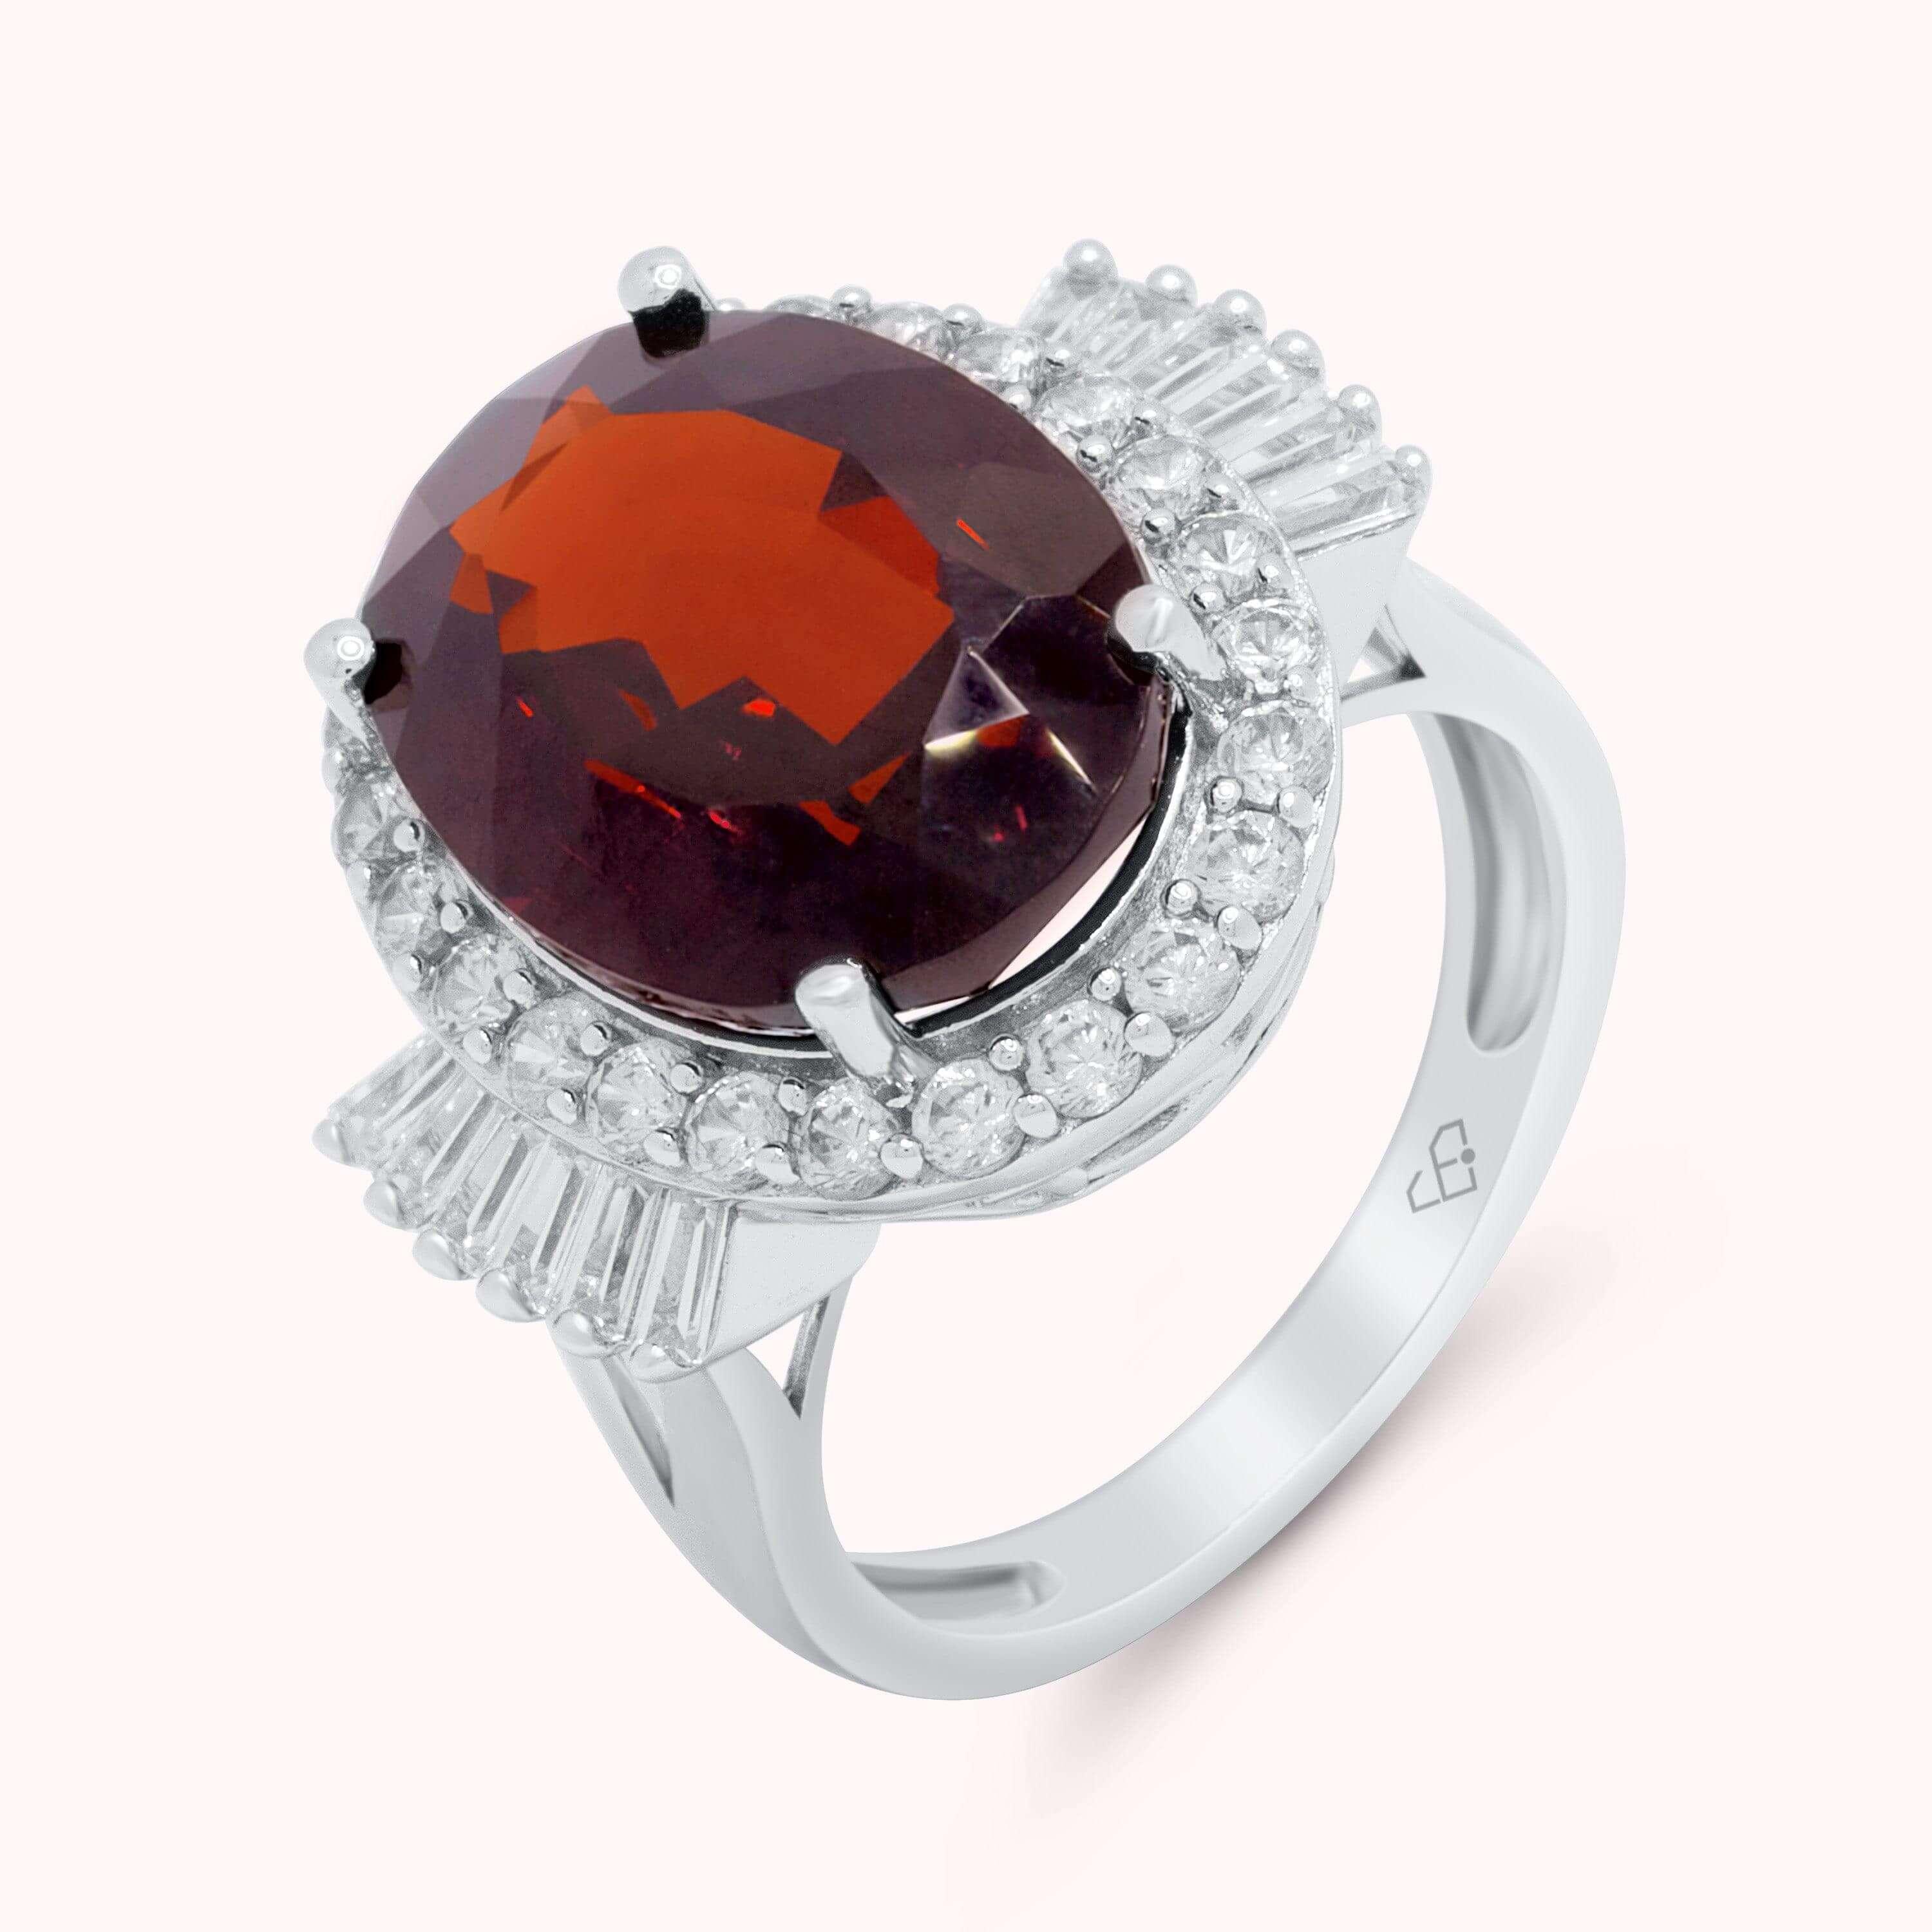 Compre en línea un anillo único de piedras preciosas rojas naturales